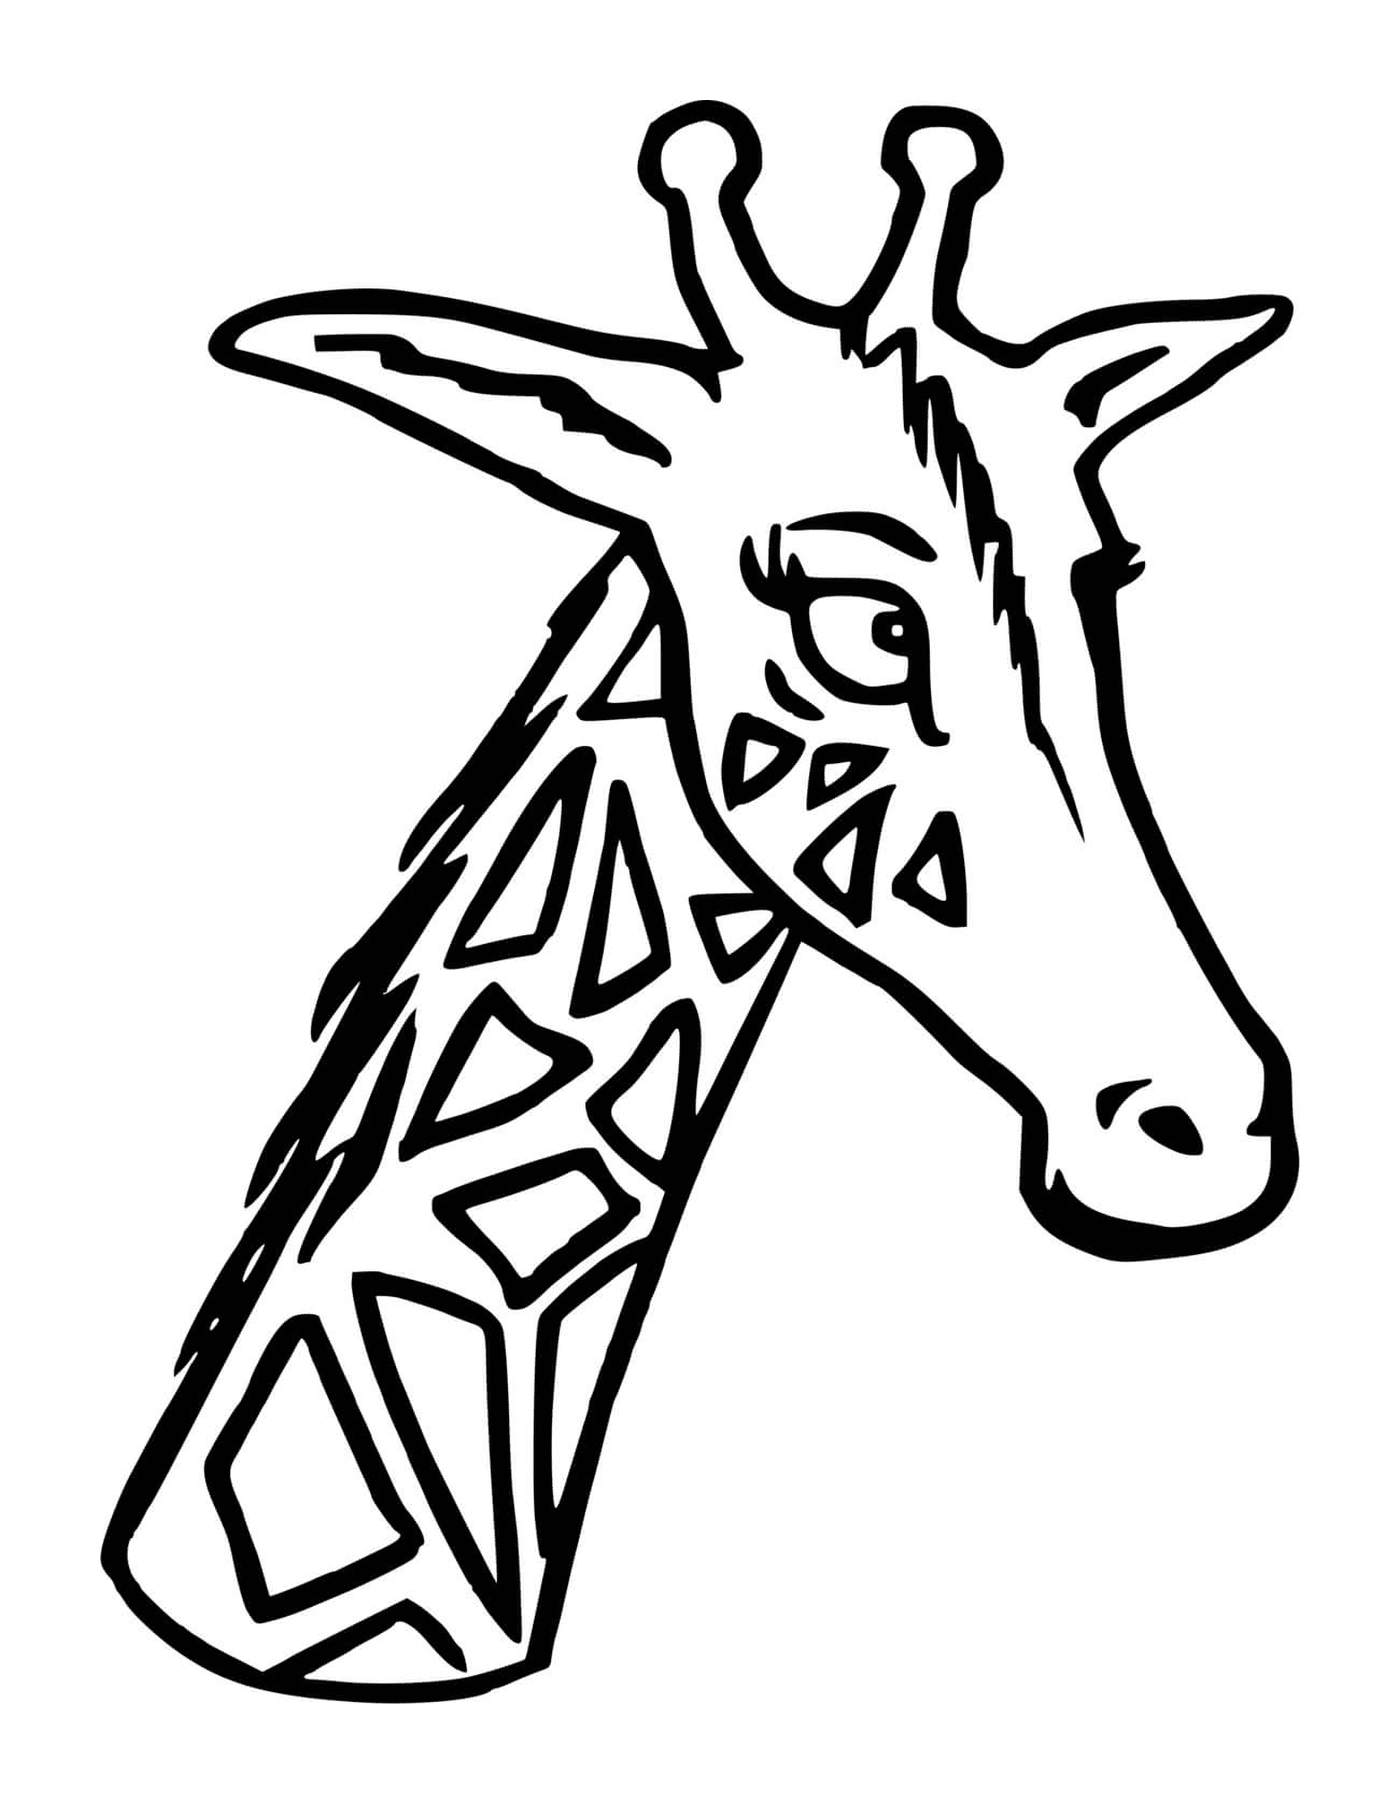  Жираф с длинной головой и шеей 